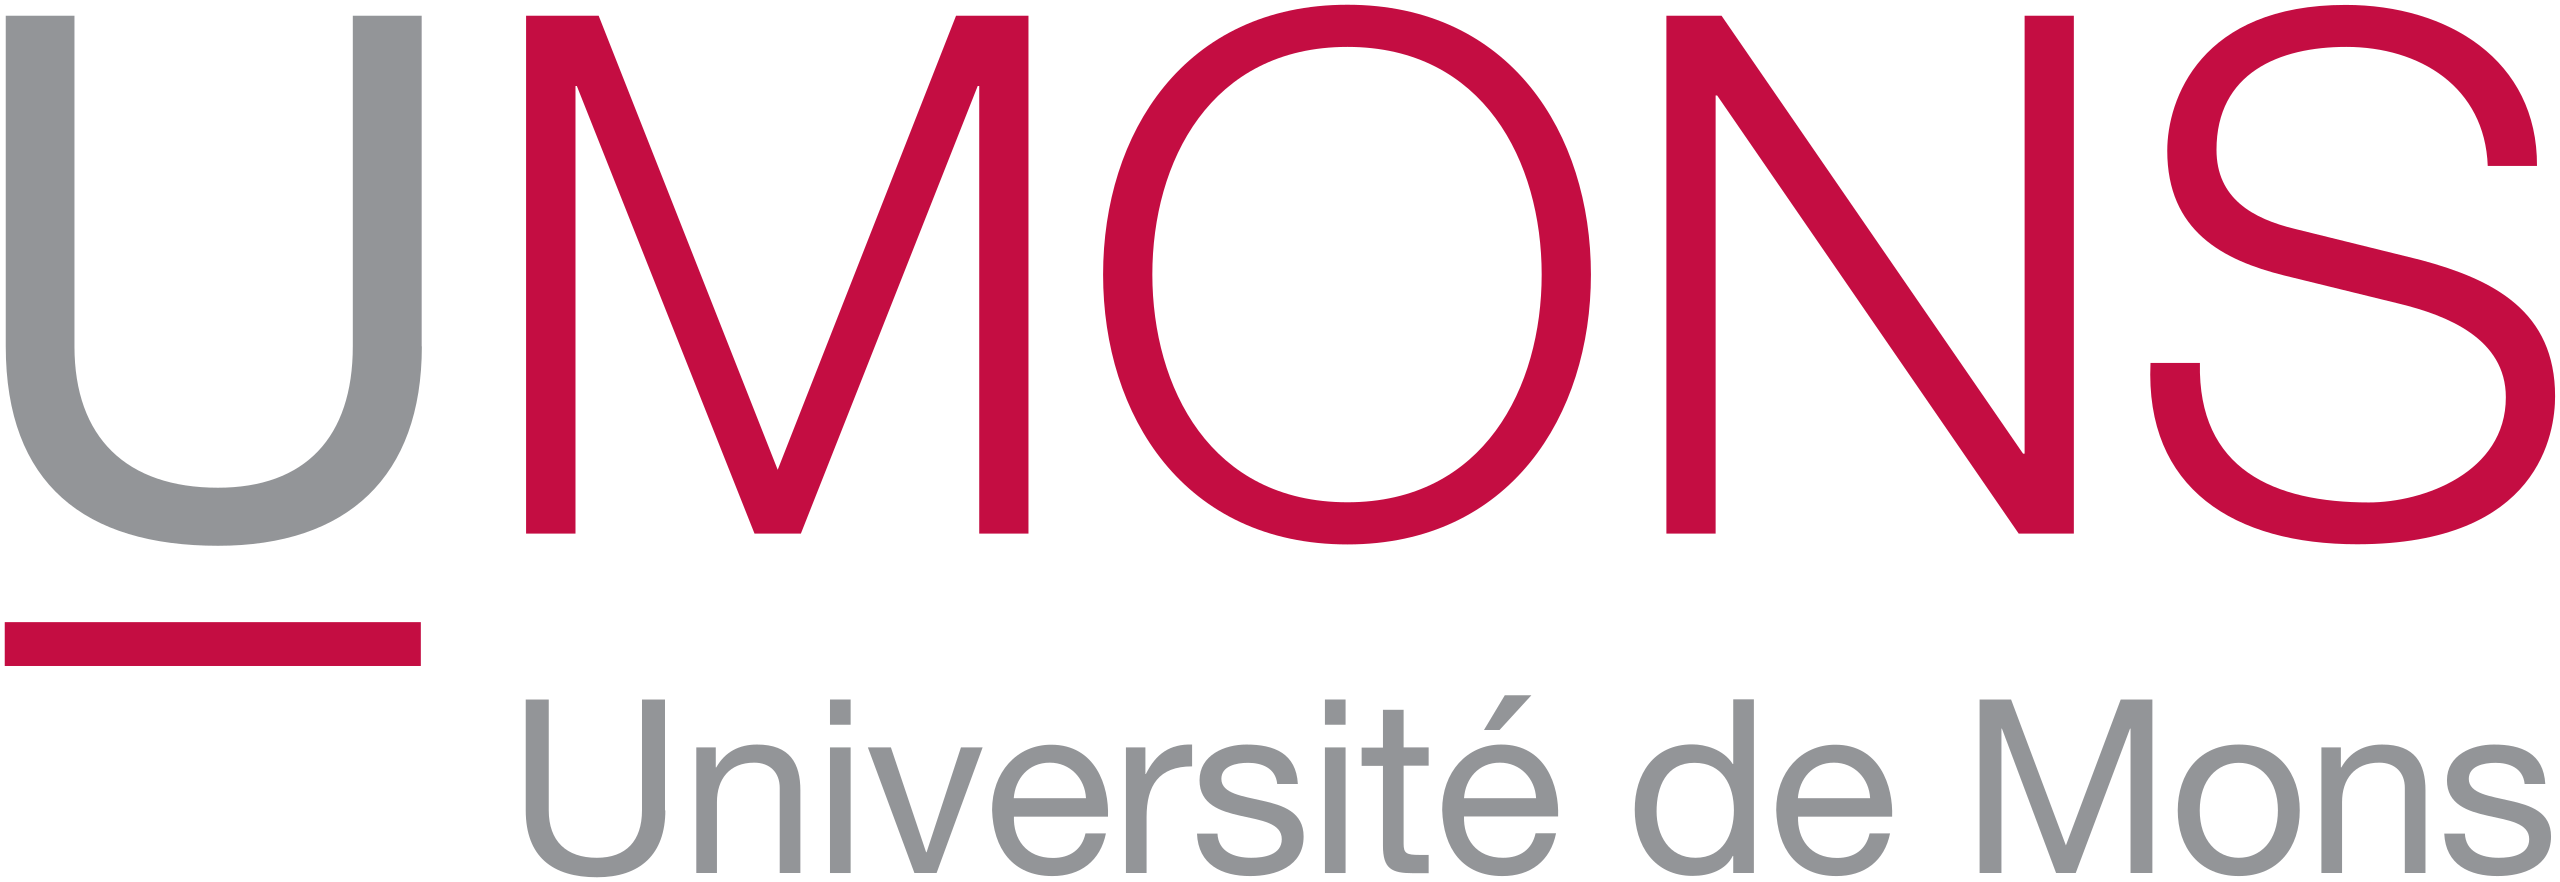 Logo UMons - Univesité de Mons